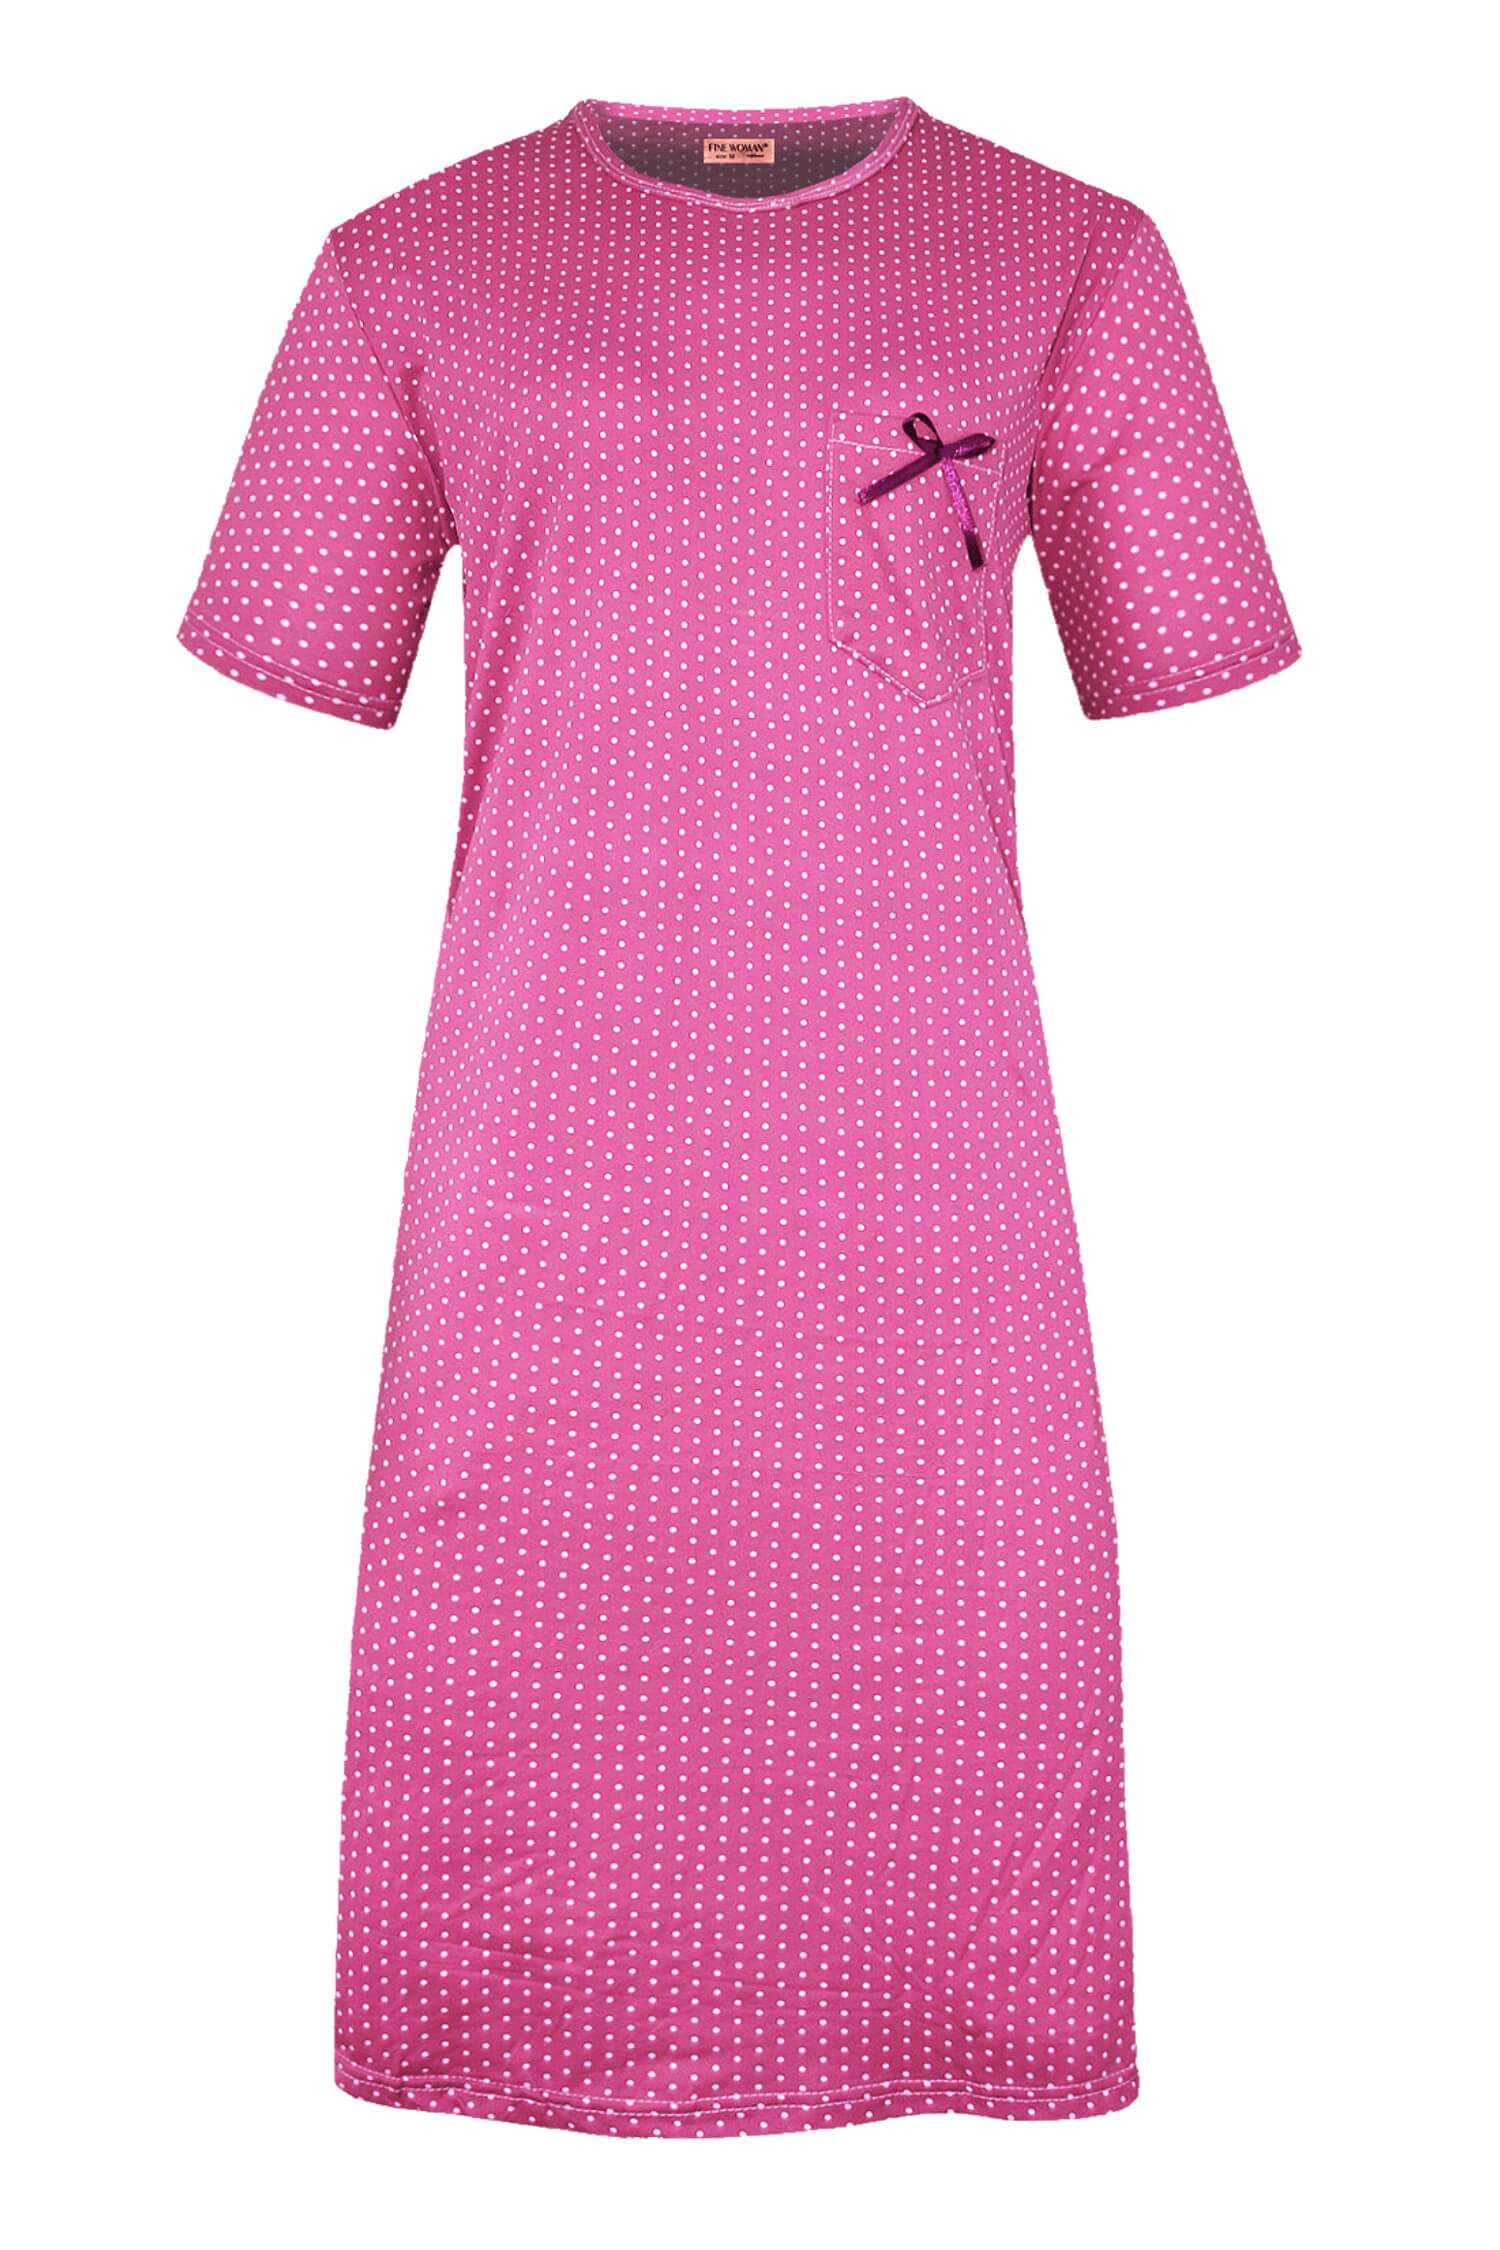 Monika dámská noční košile s puntíky 6533 XXL tmavě růžová